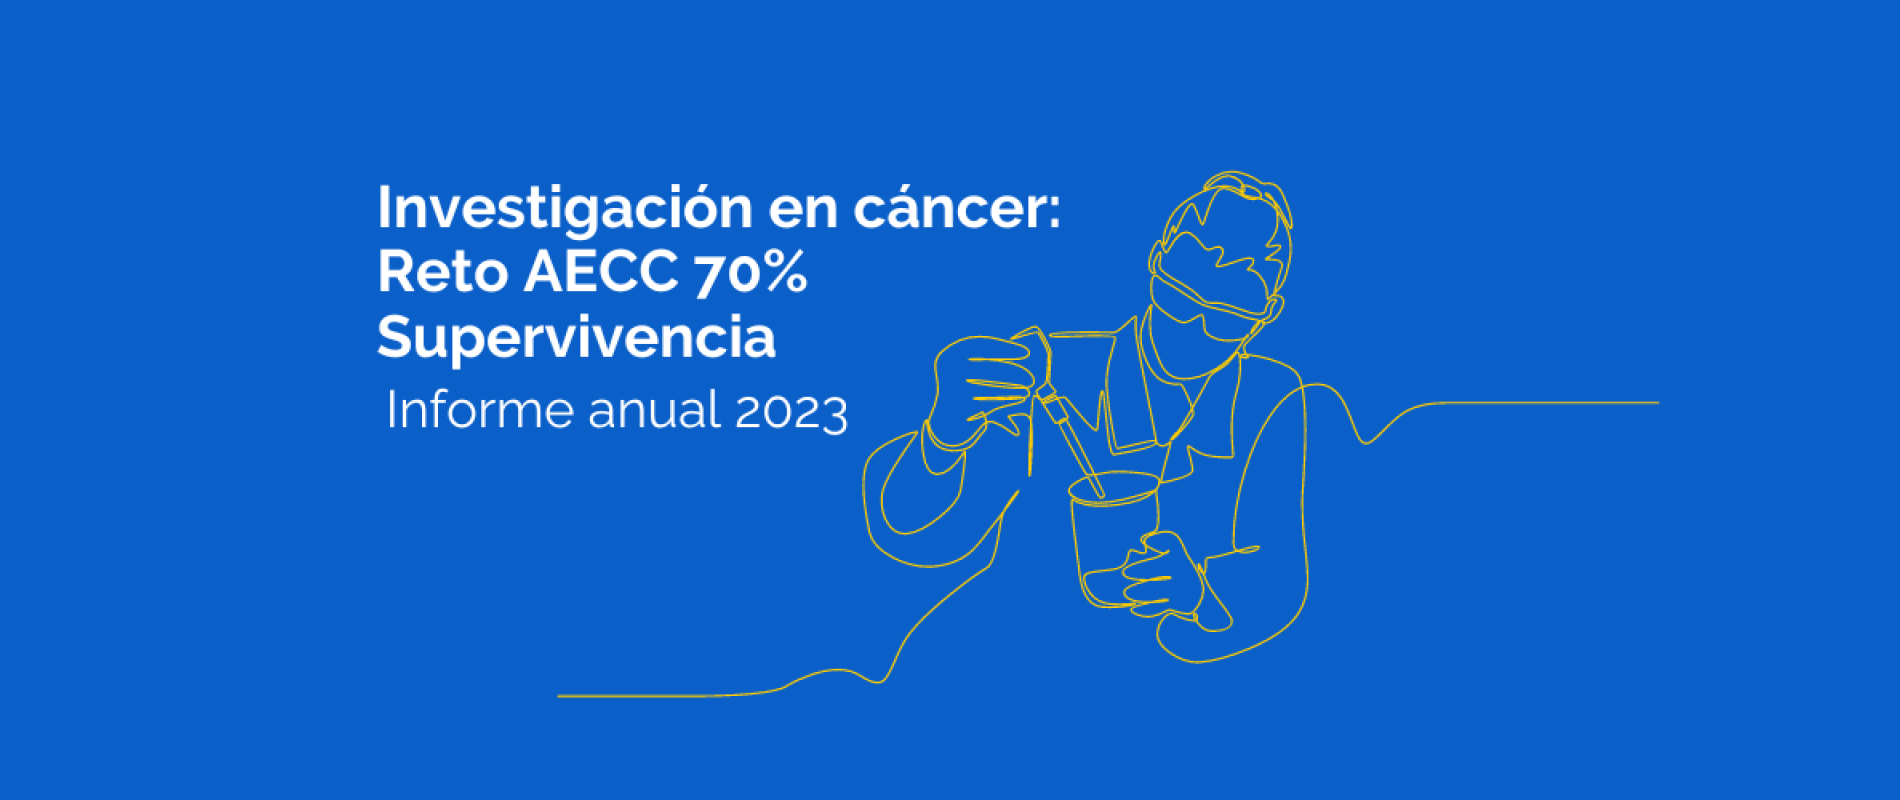 La Fundación Científica de la Asociación Española Contra el Cáncer publica su informe anual 2023